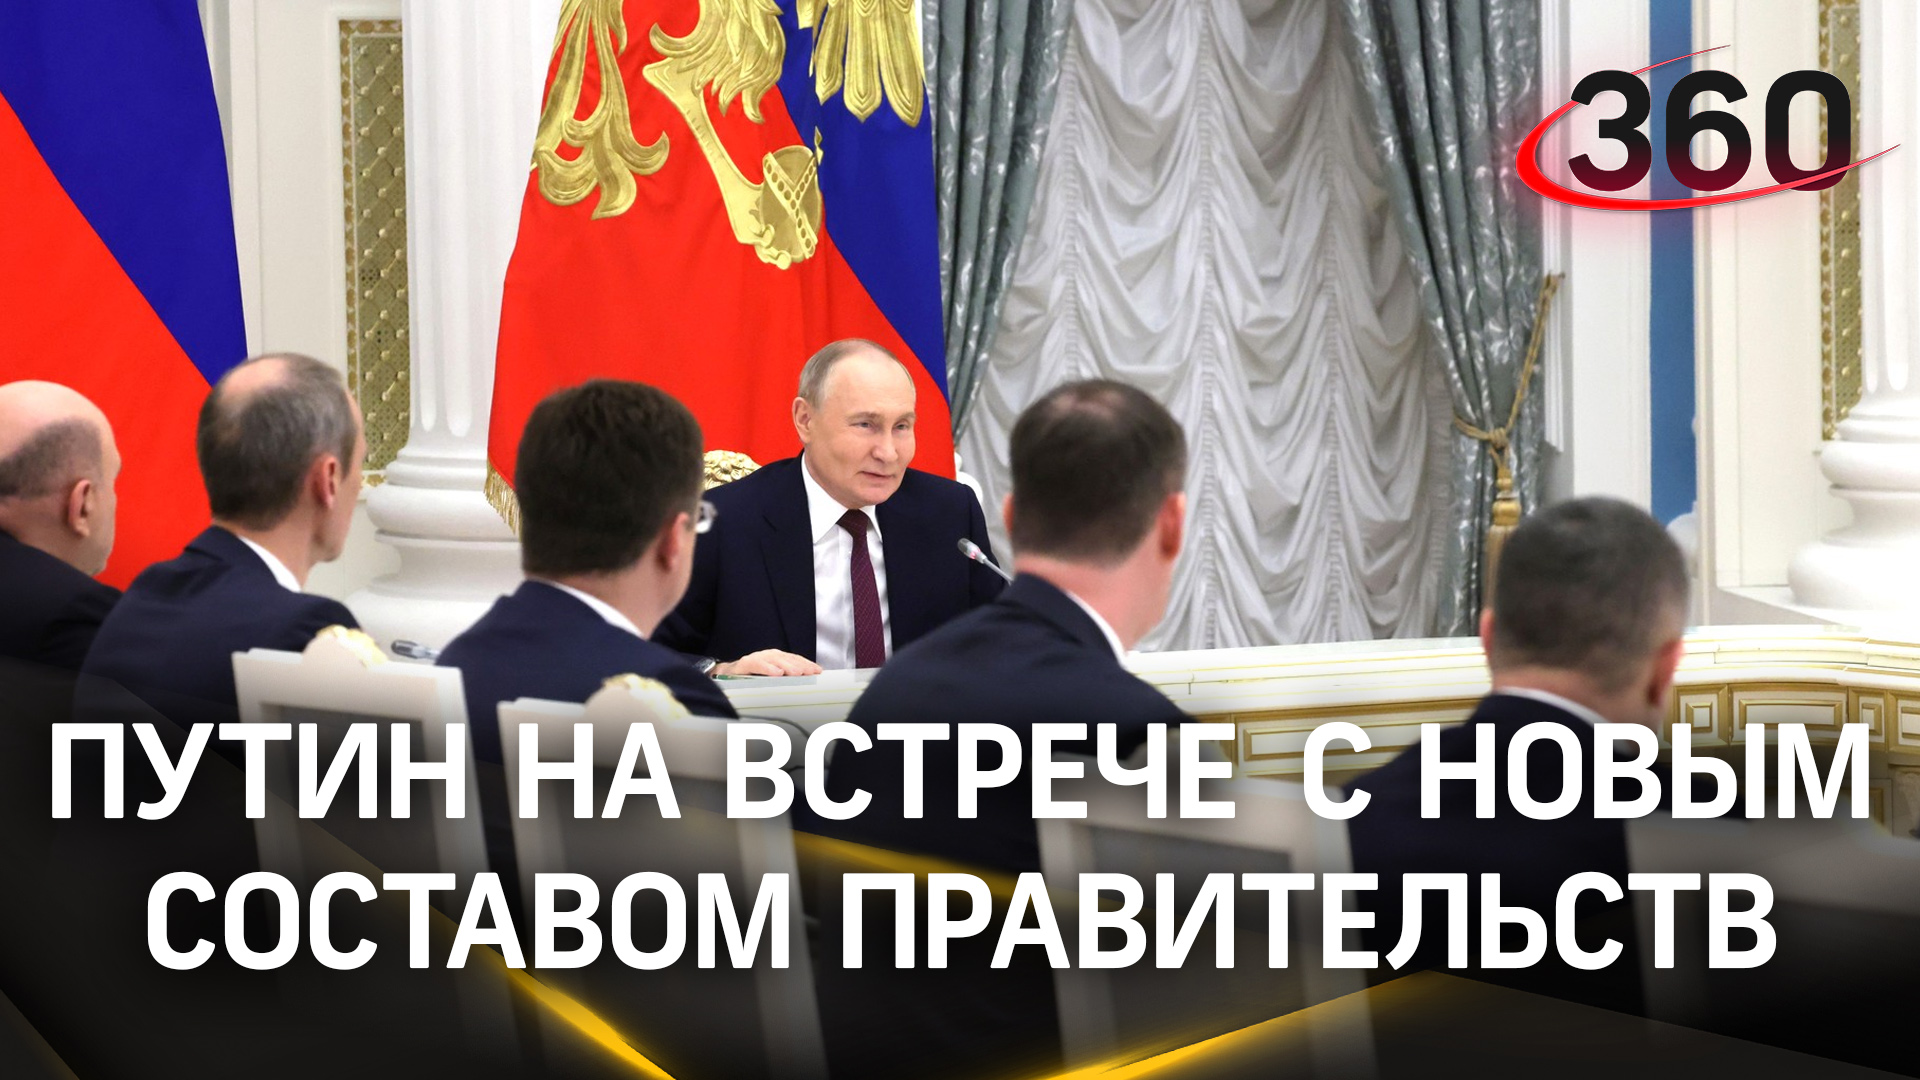 «Впереди много задач»: что рассказал Путин на встрече с новым составом правительства РФ